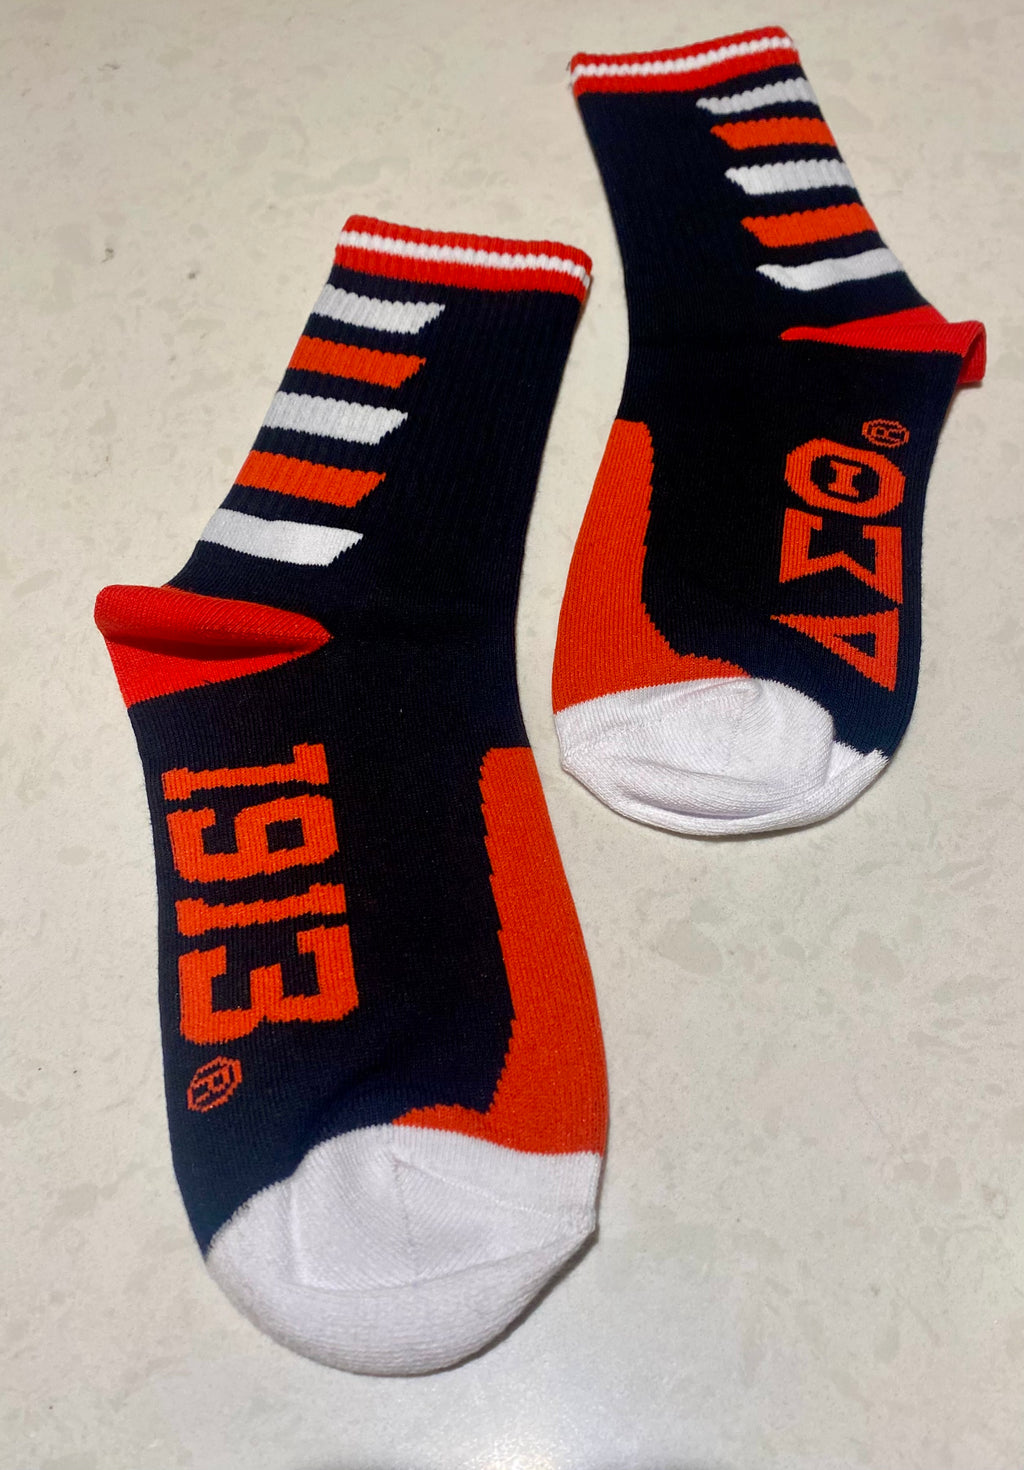 DST (Delta) Socks